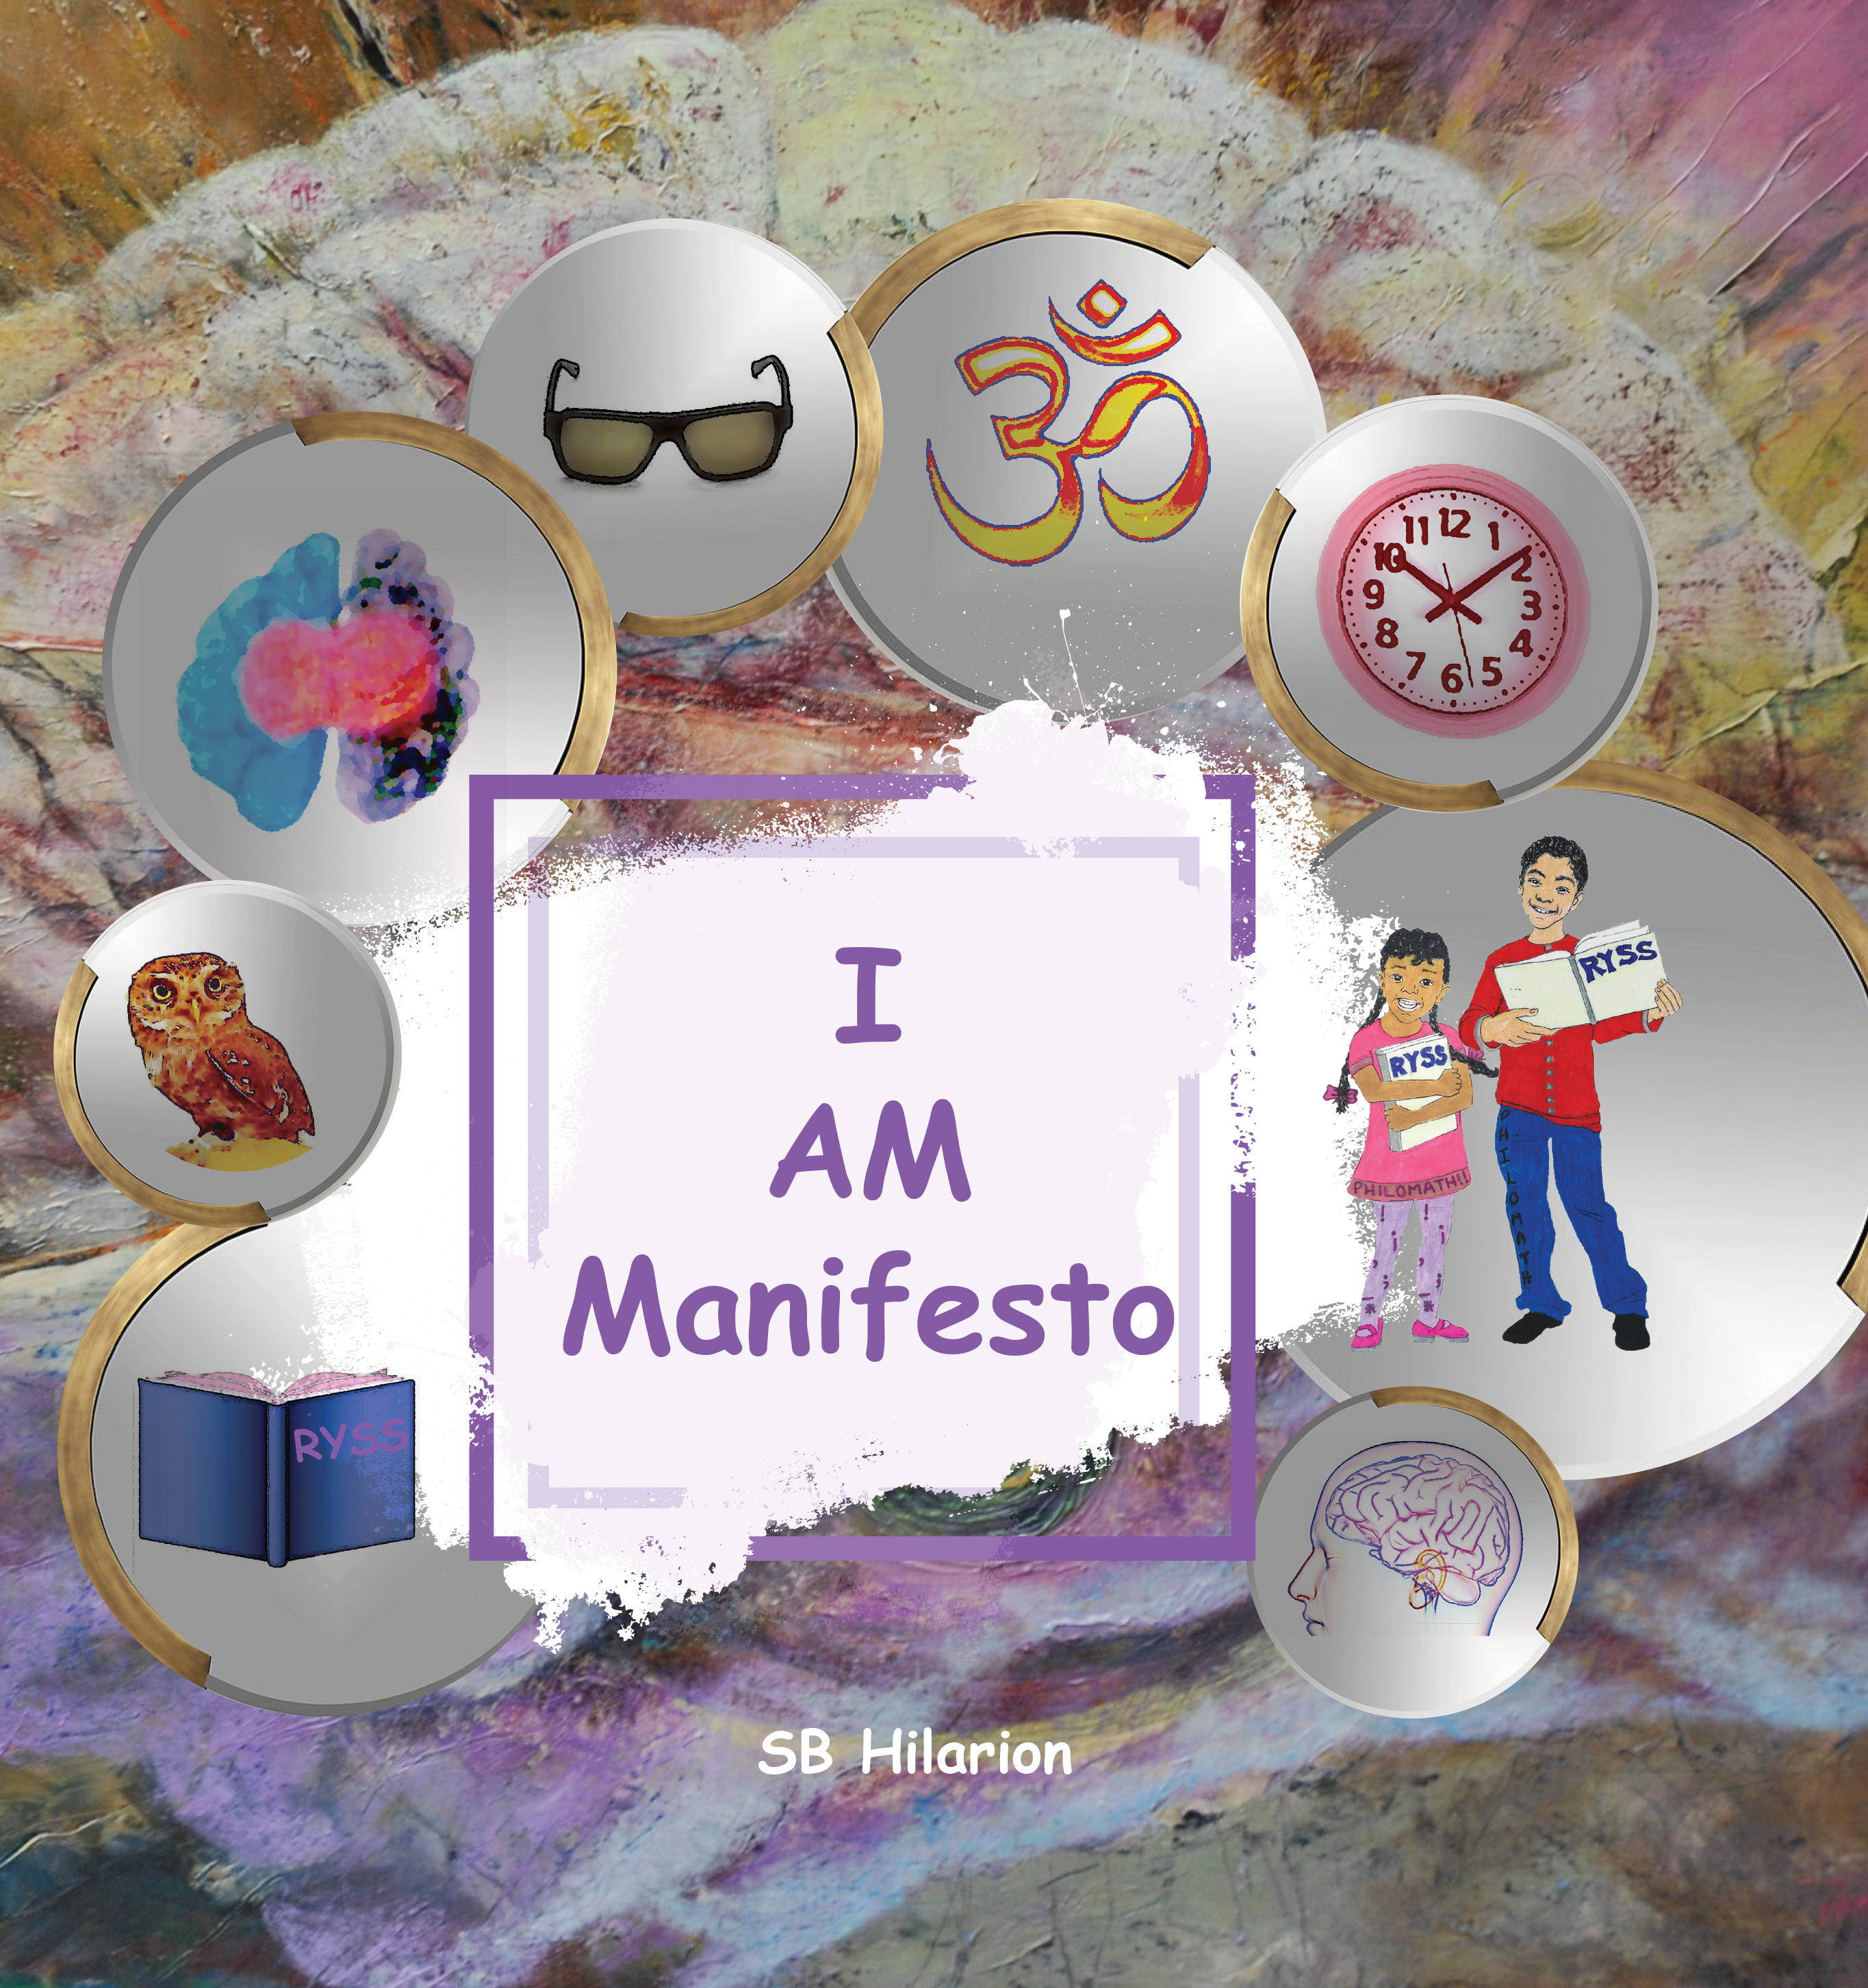 I AM Manifesto by SB Hilarion